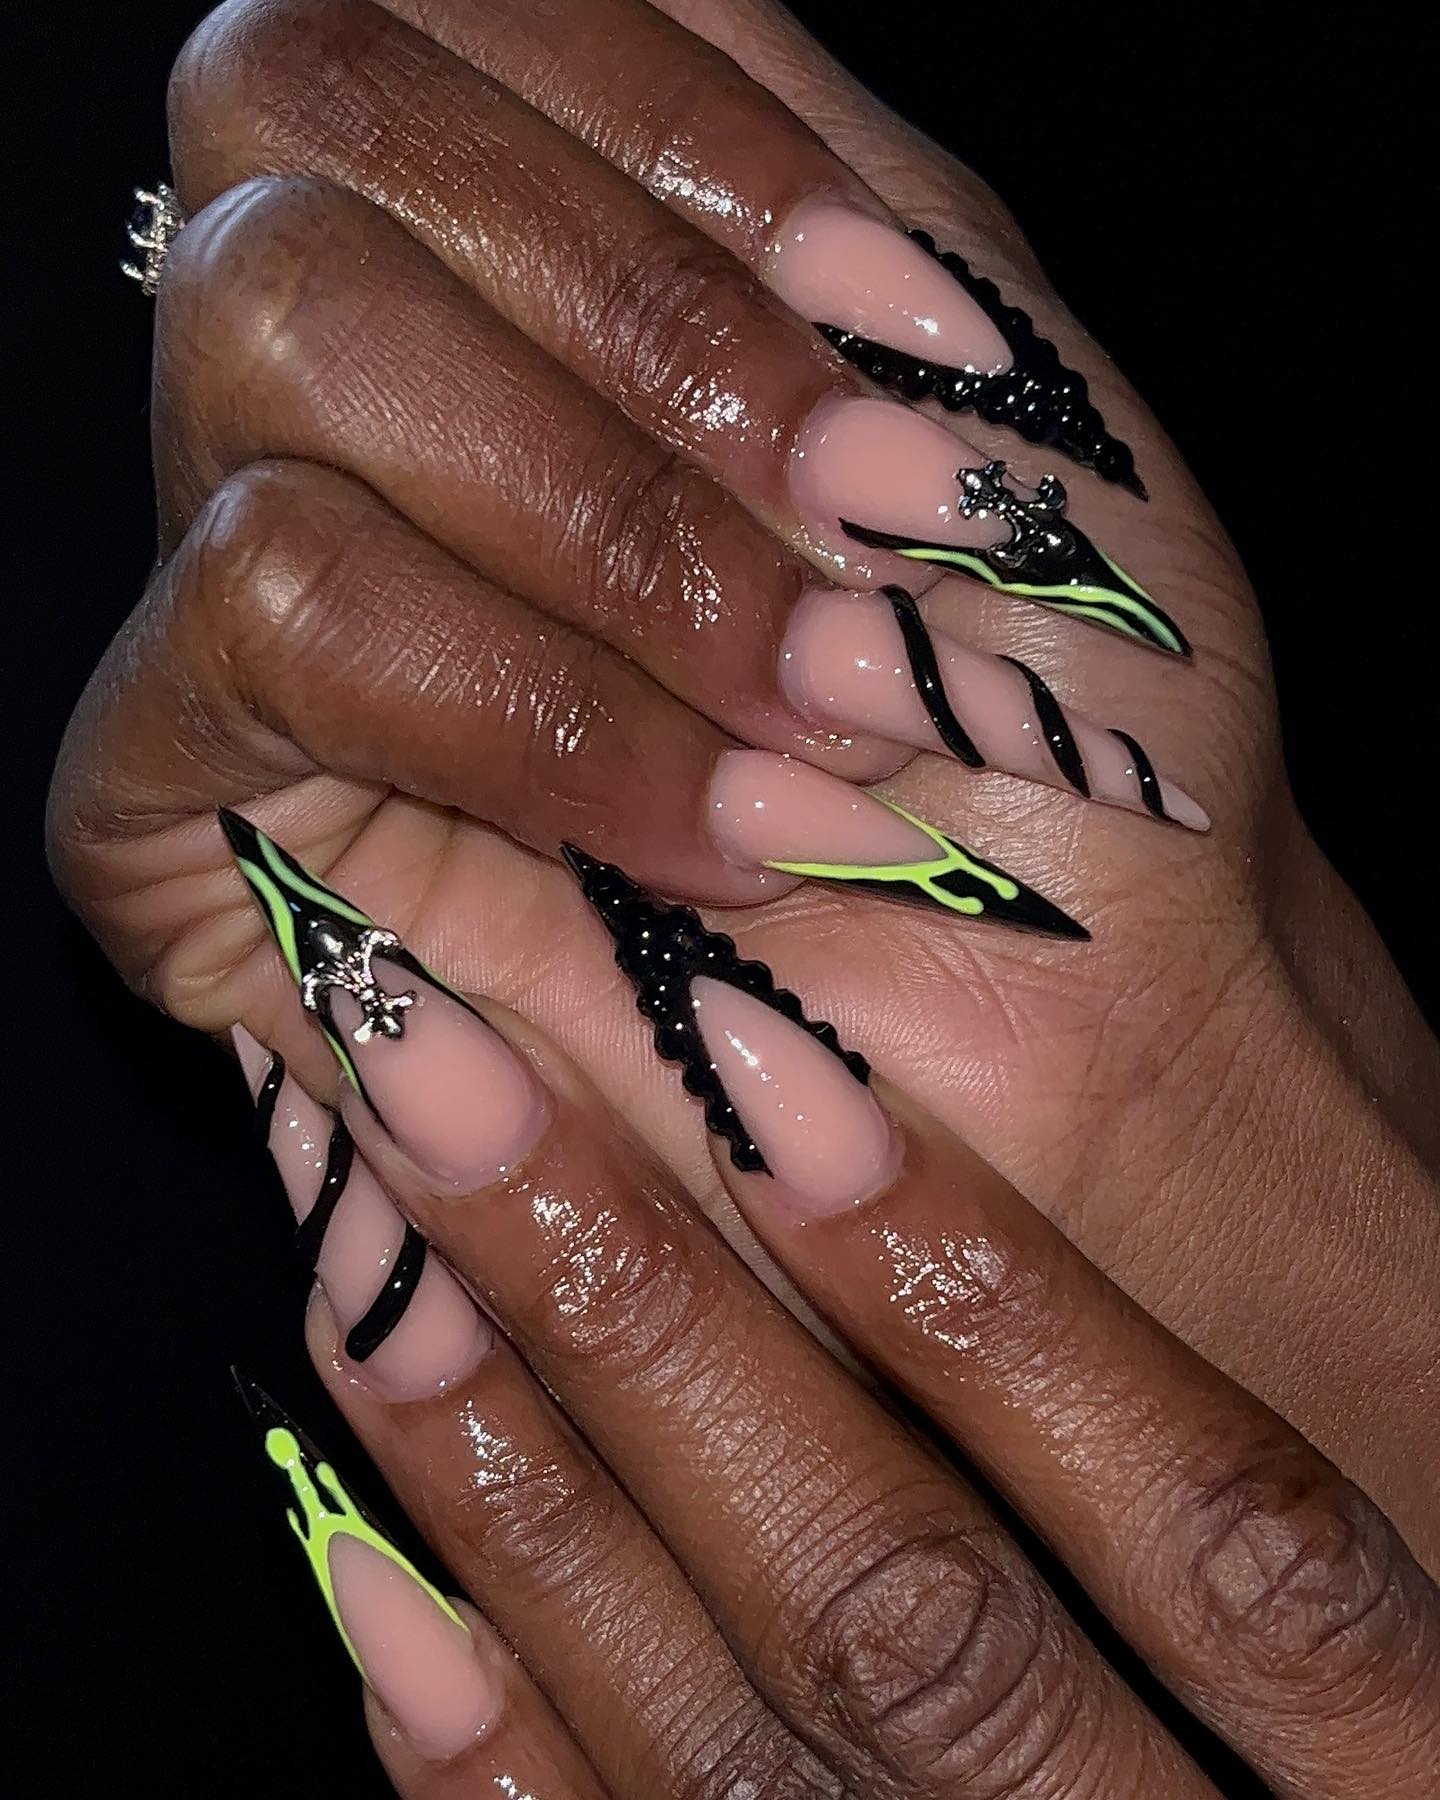 Flawless Nudie glam nails